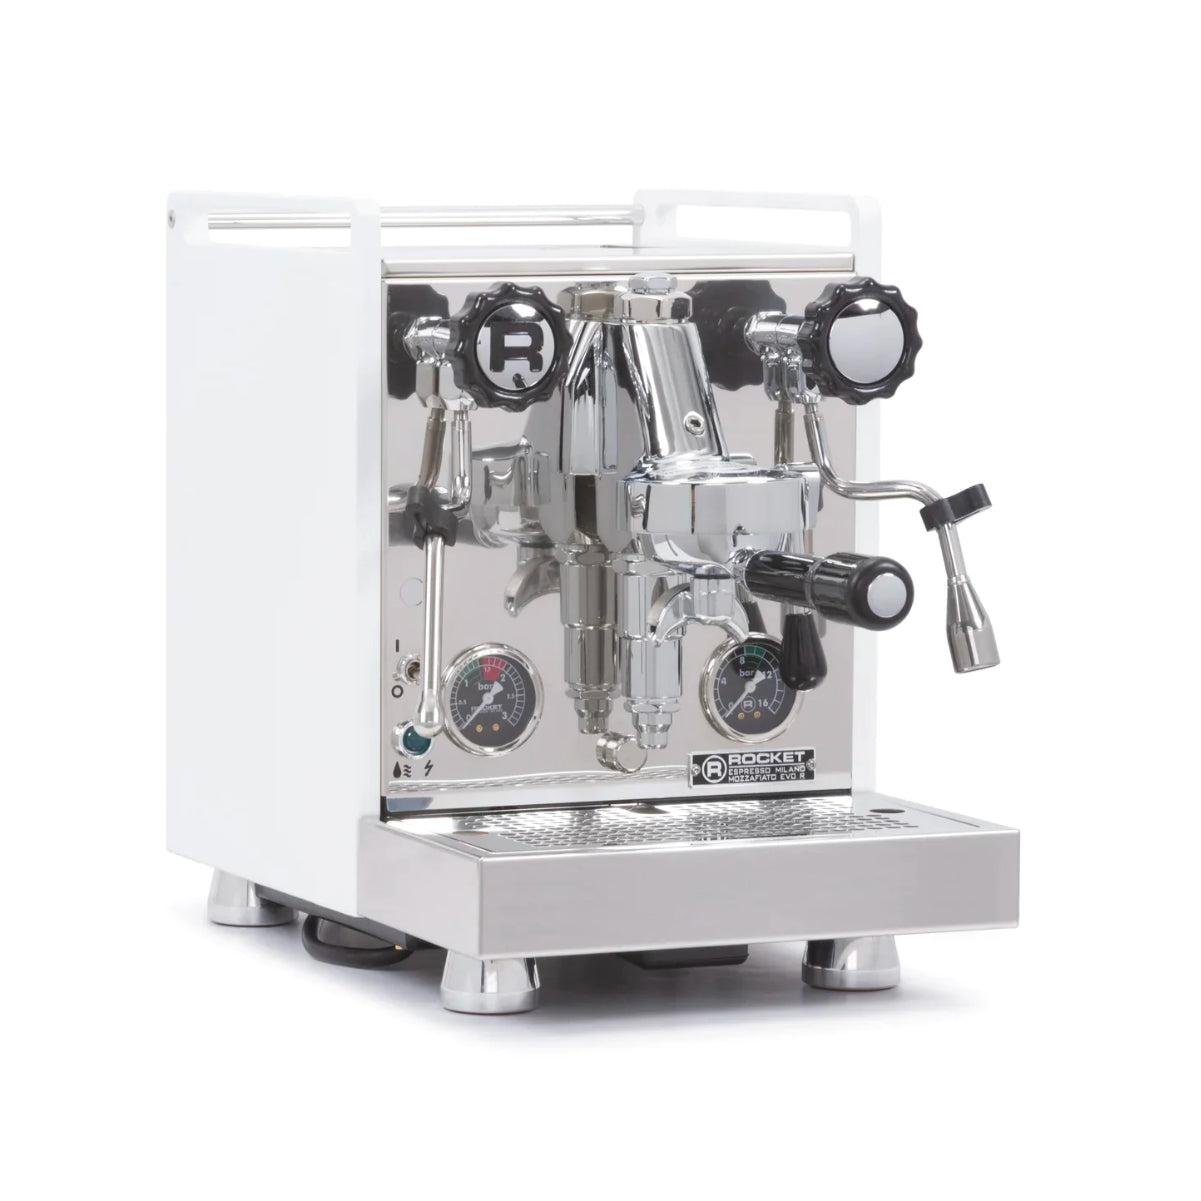 Rocket Mozzafiato Cronometro Type R Espresso Machine With Short Timer (White)